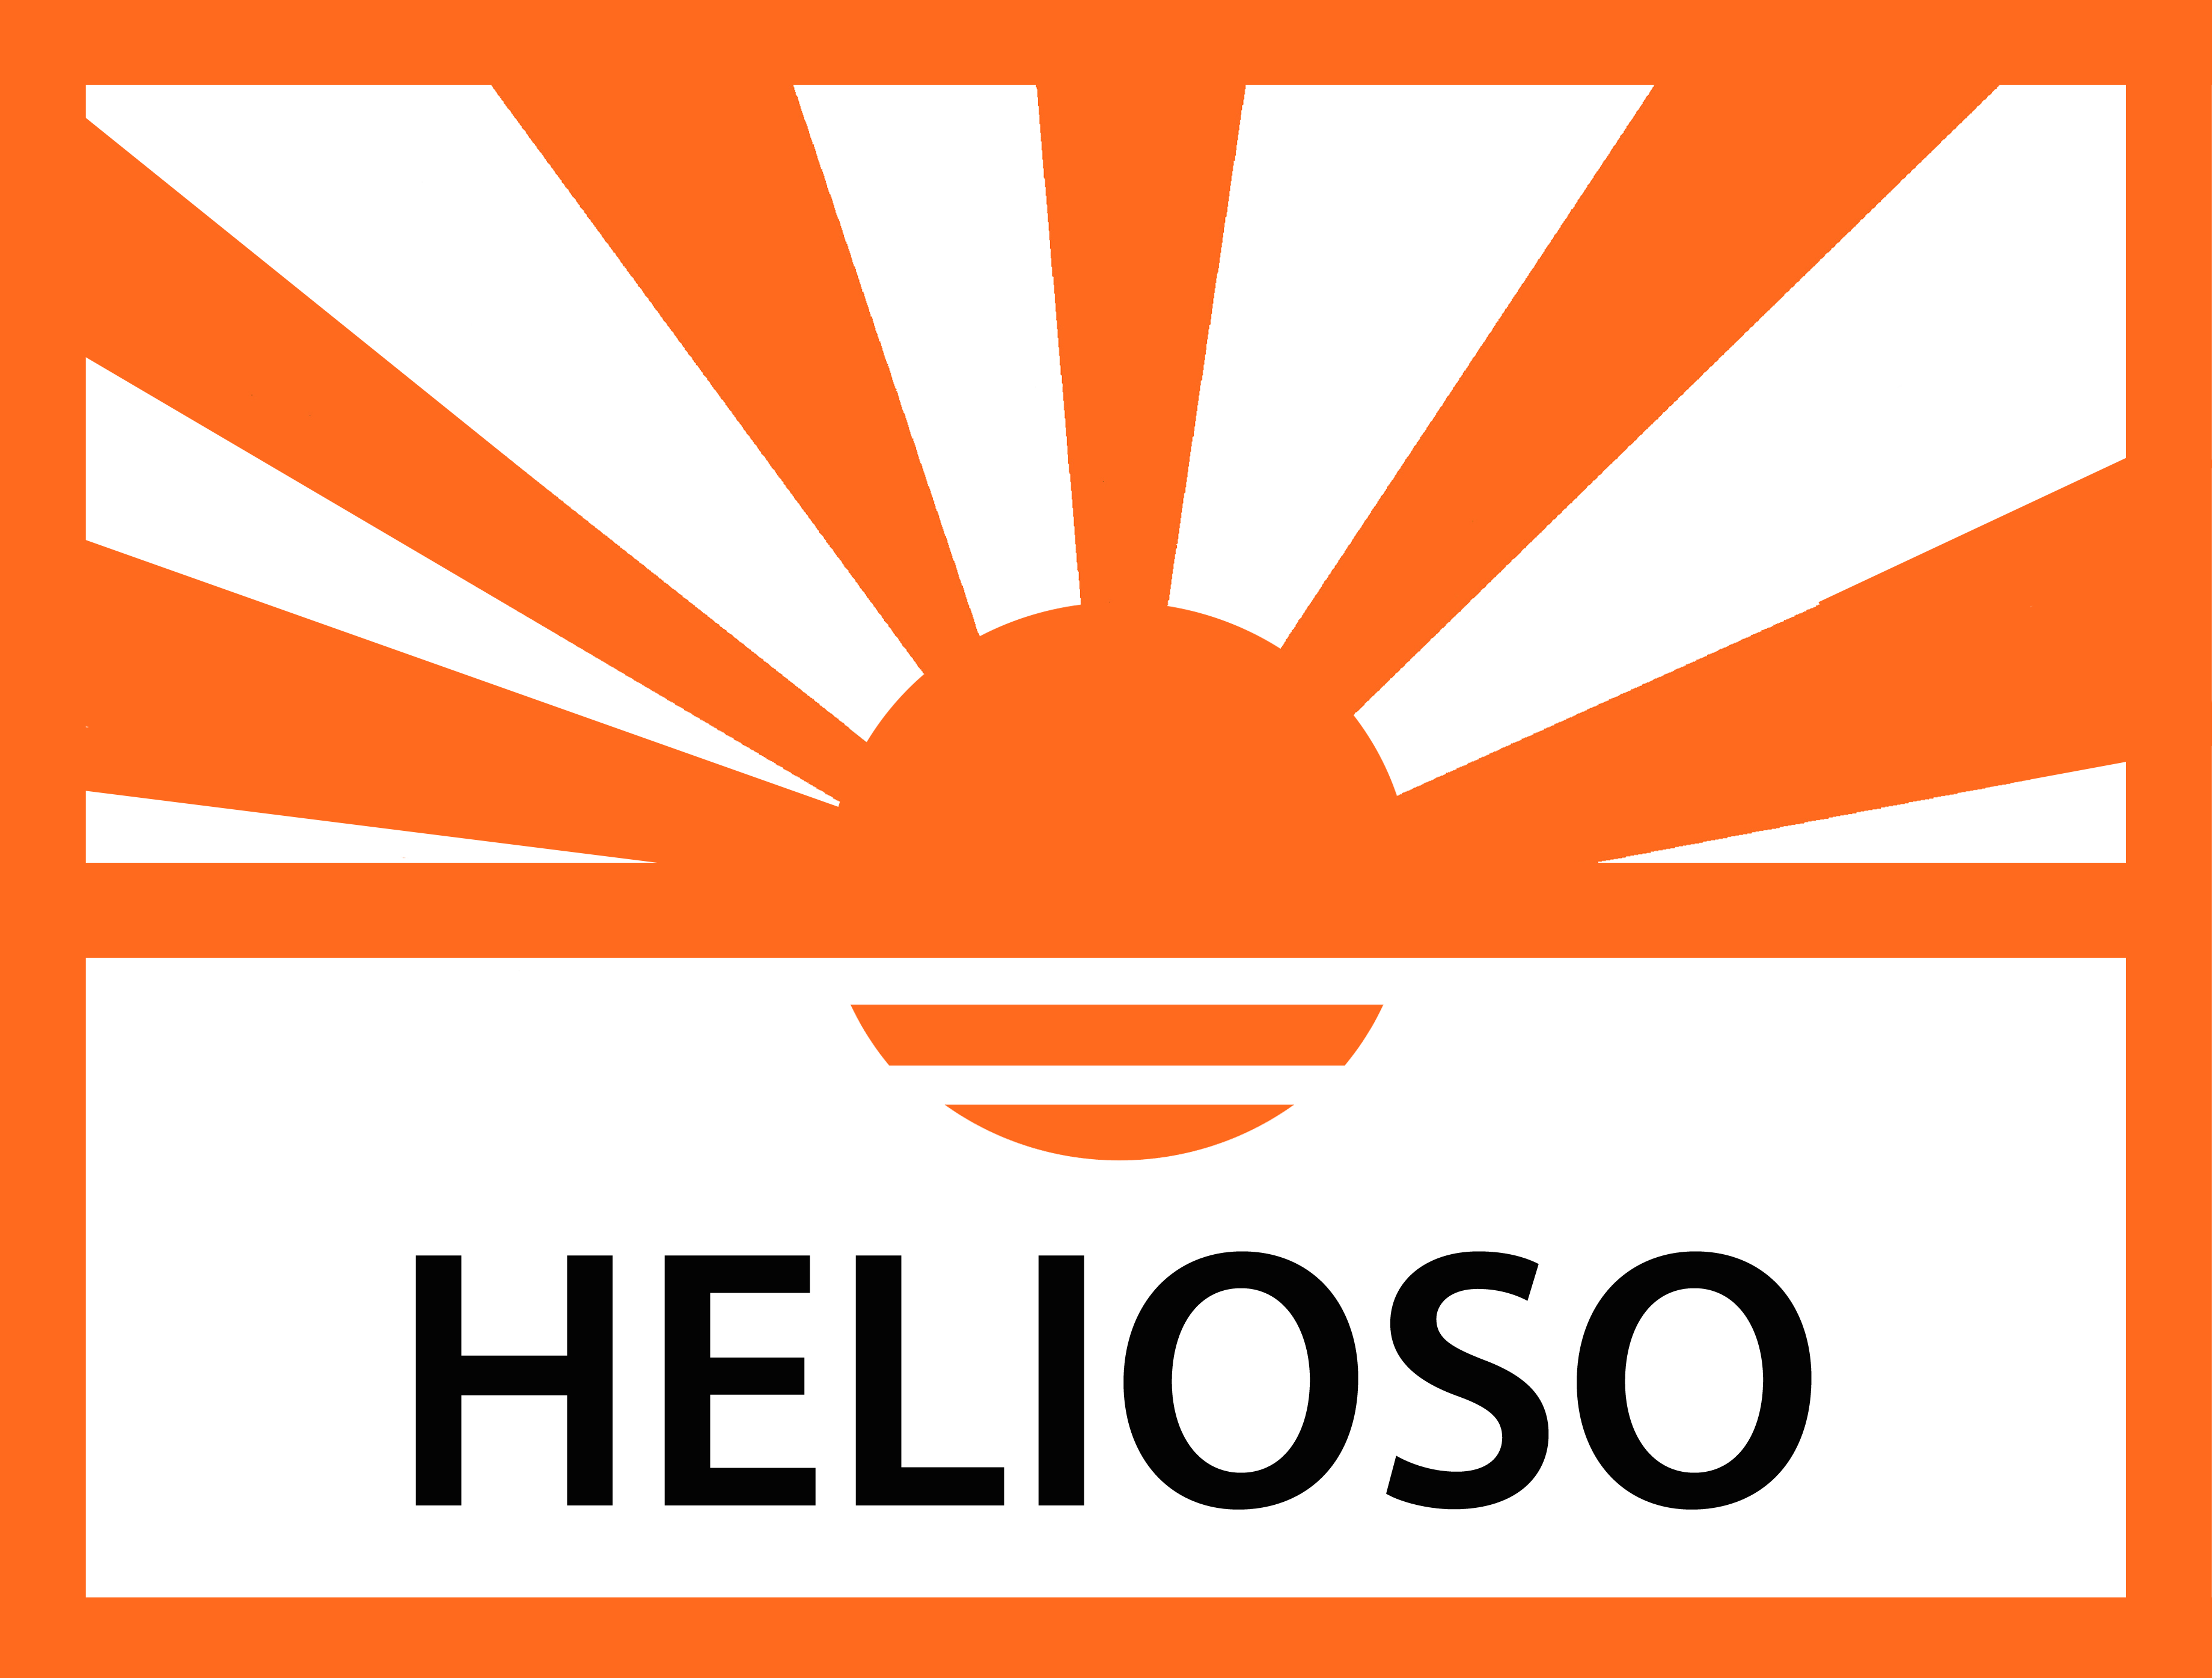 Helioso logo